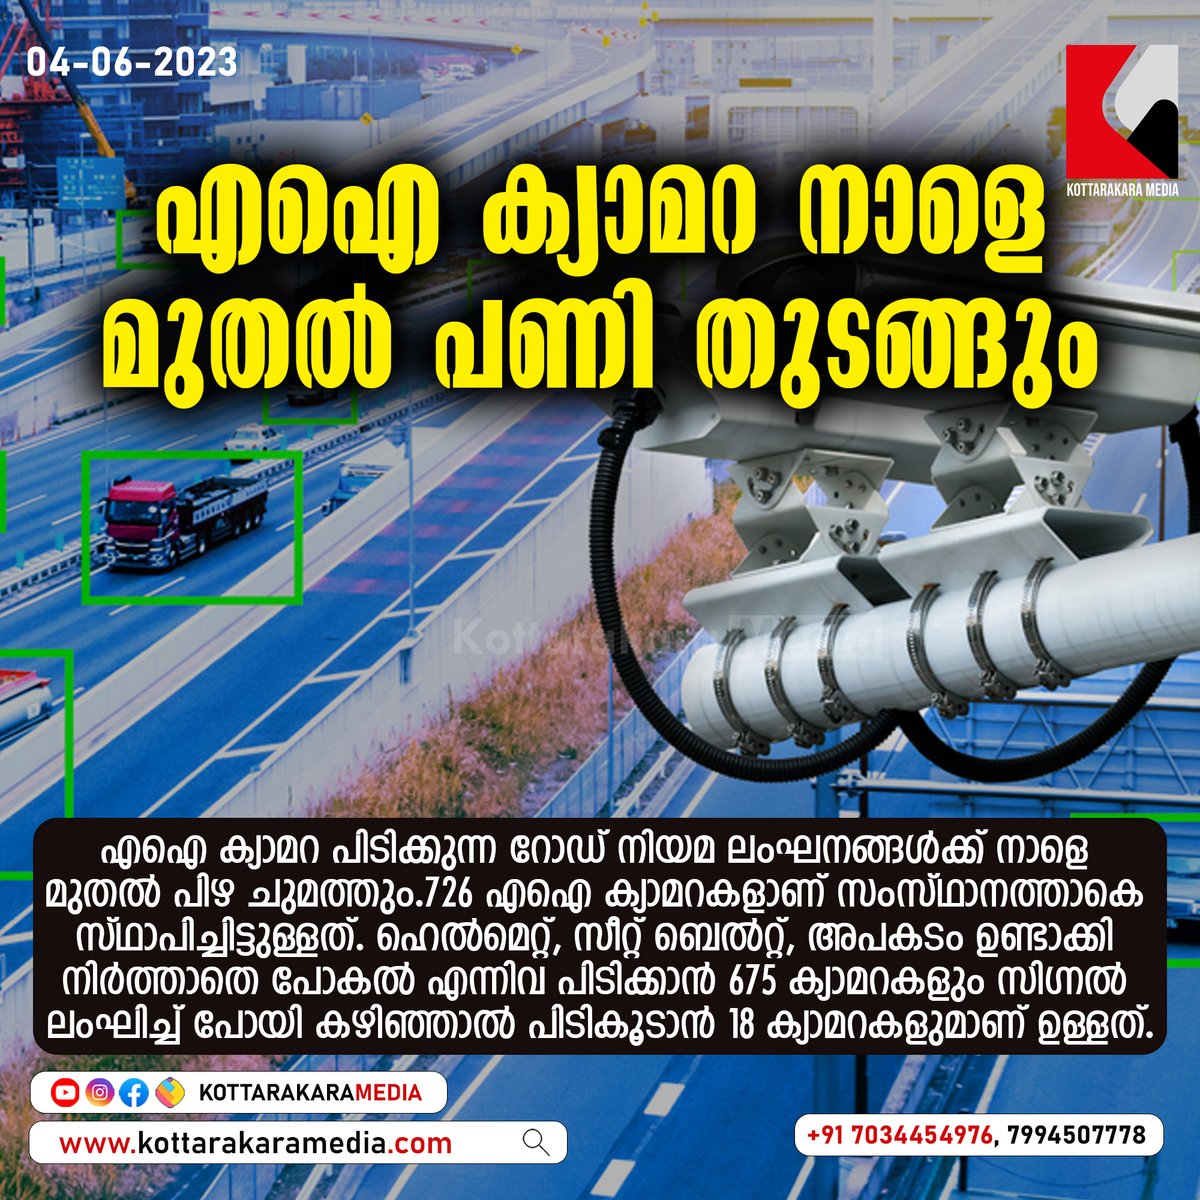 എഐ ക്യാമറ നാളെ മുതൽ പണി തുടങ്ങും
#AICamera #AI #camera #roadsafety #trafficviolations #fine #start #Tommorrow #Kollam #Kerala #LatestNews #breakingnews #news